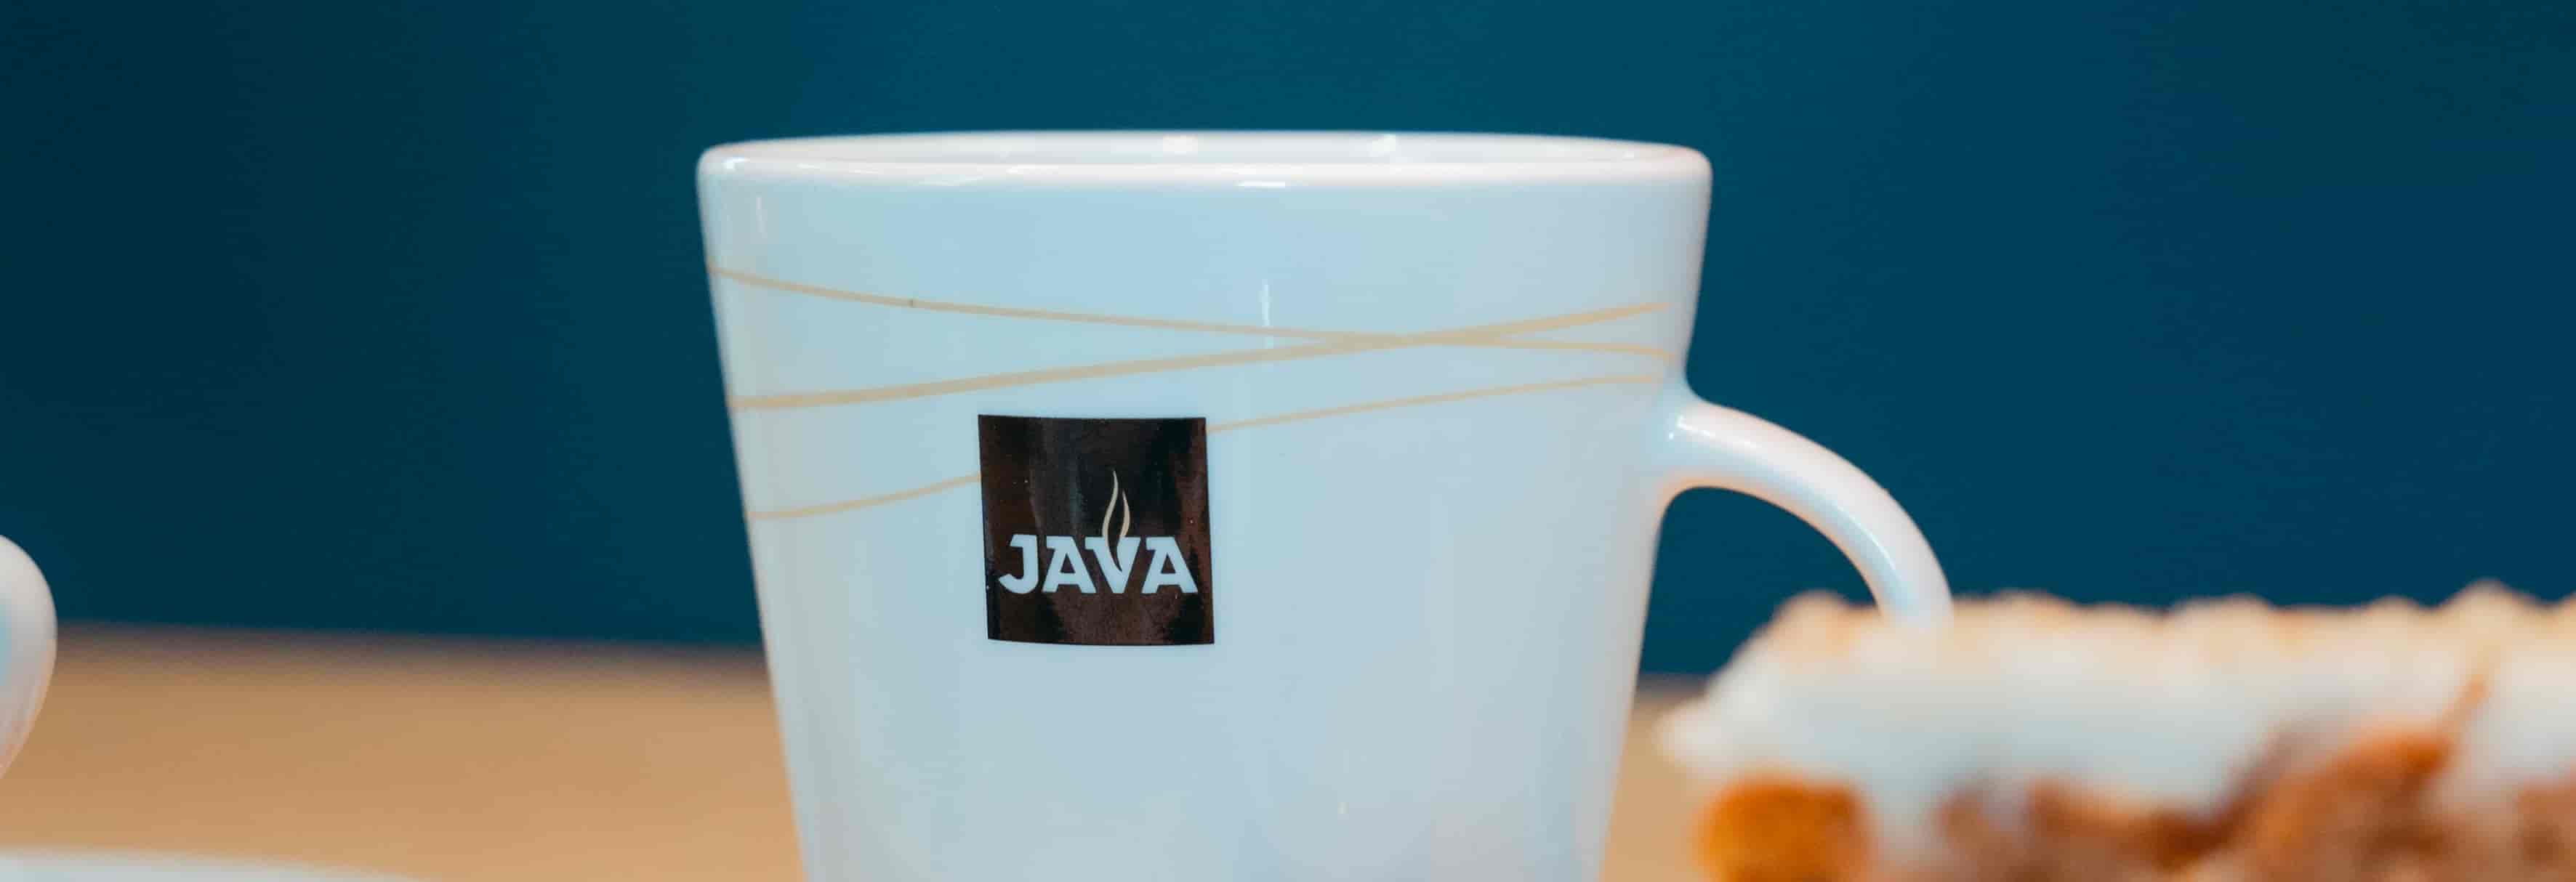 Conheça sua linguagem: Armadilhas em Java